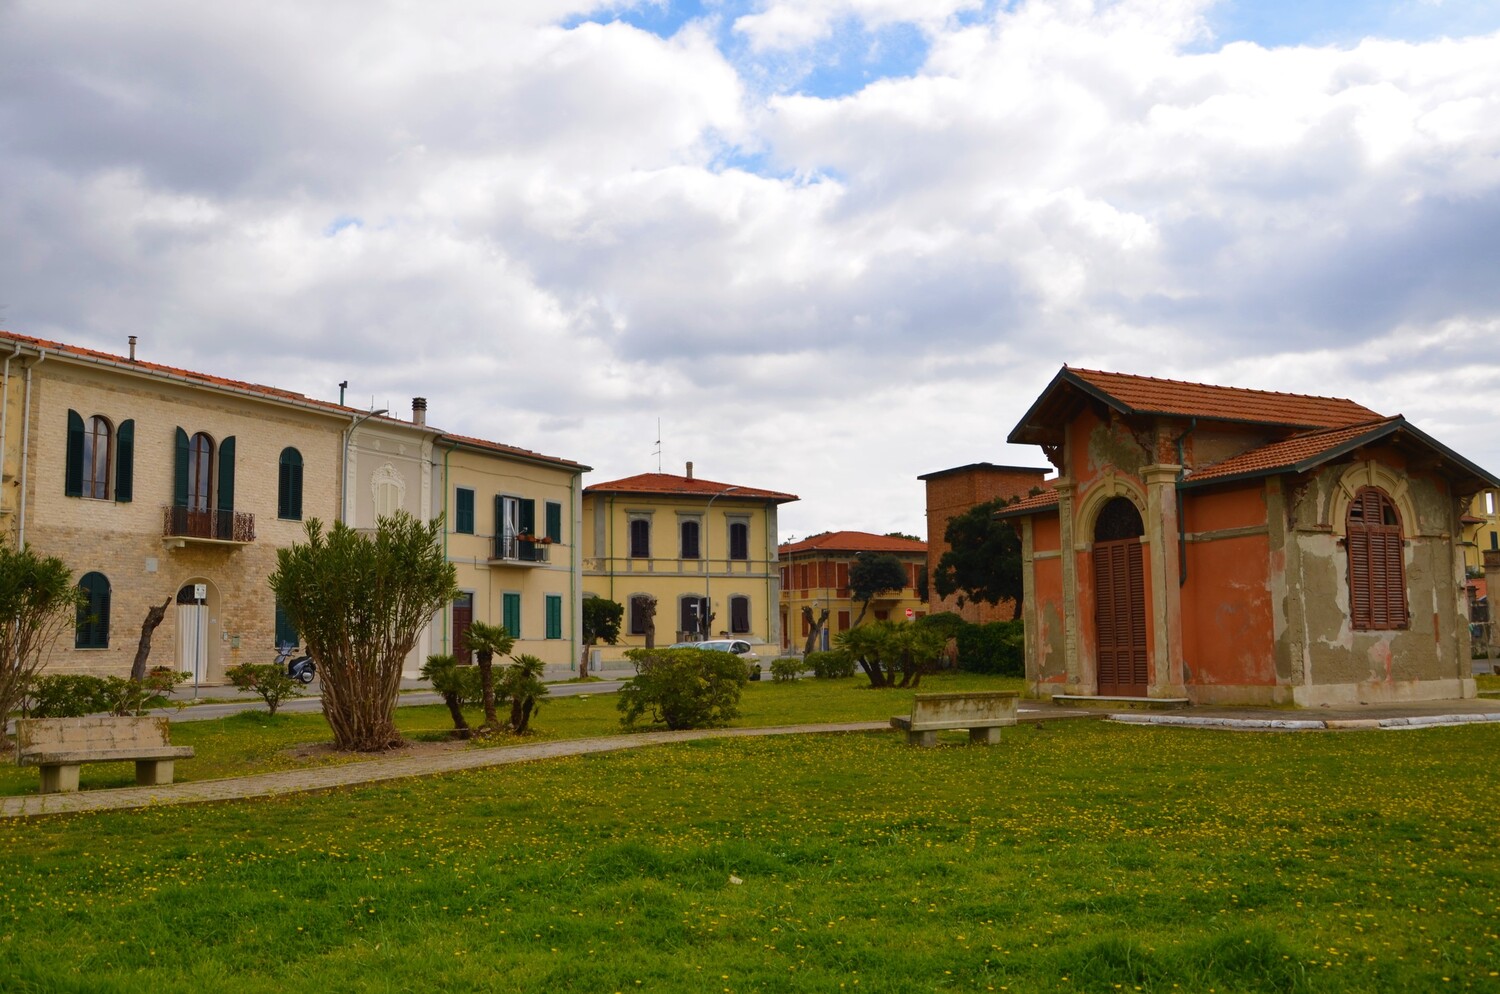 Scorcio via Minorca (L. Corevi, Comune di Pisa)